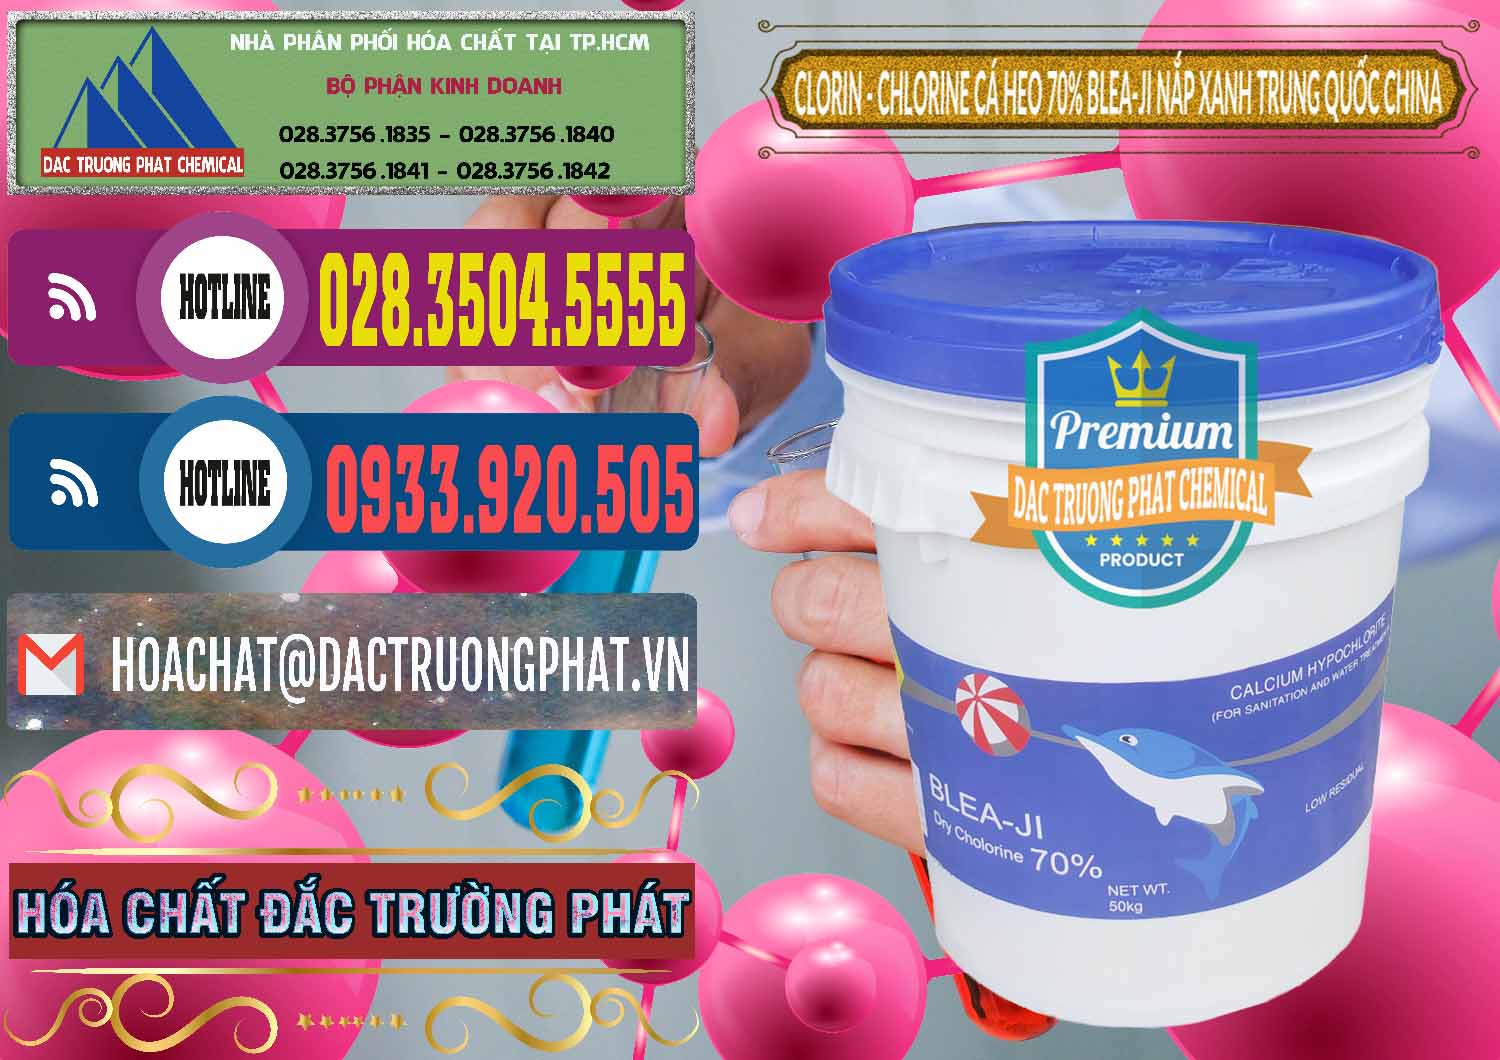 Cty bán & cung cấp Clorin - Chlorine Cá Heo 70% Cá Heo Blea-Ji Thùng Tròn Nắp Xanh Trung Quốc China - 0208 - Đơn vị cung cấp và nhập khẩu hóa chất tại TP.HCM - muabanhoachat.com.vn